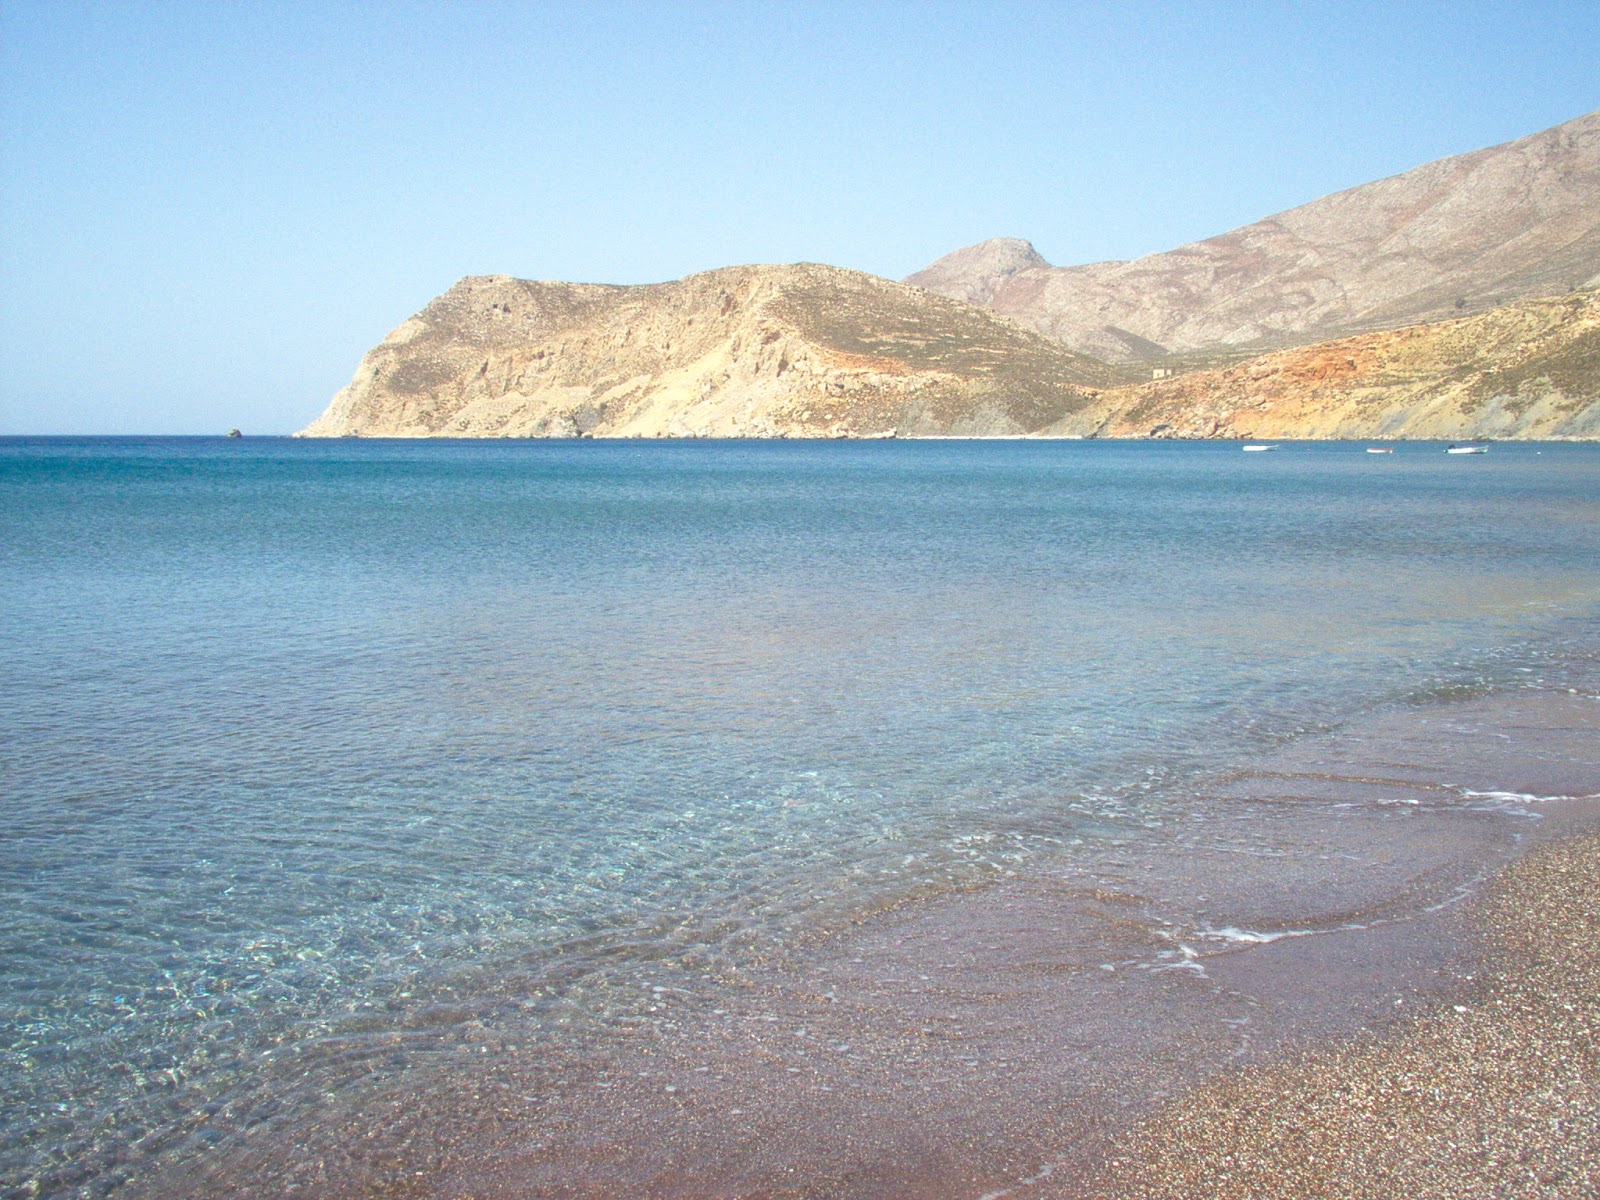 Eristos beach'in fotoğrafı geniş ile birlikte